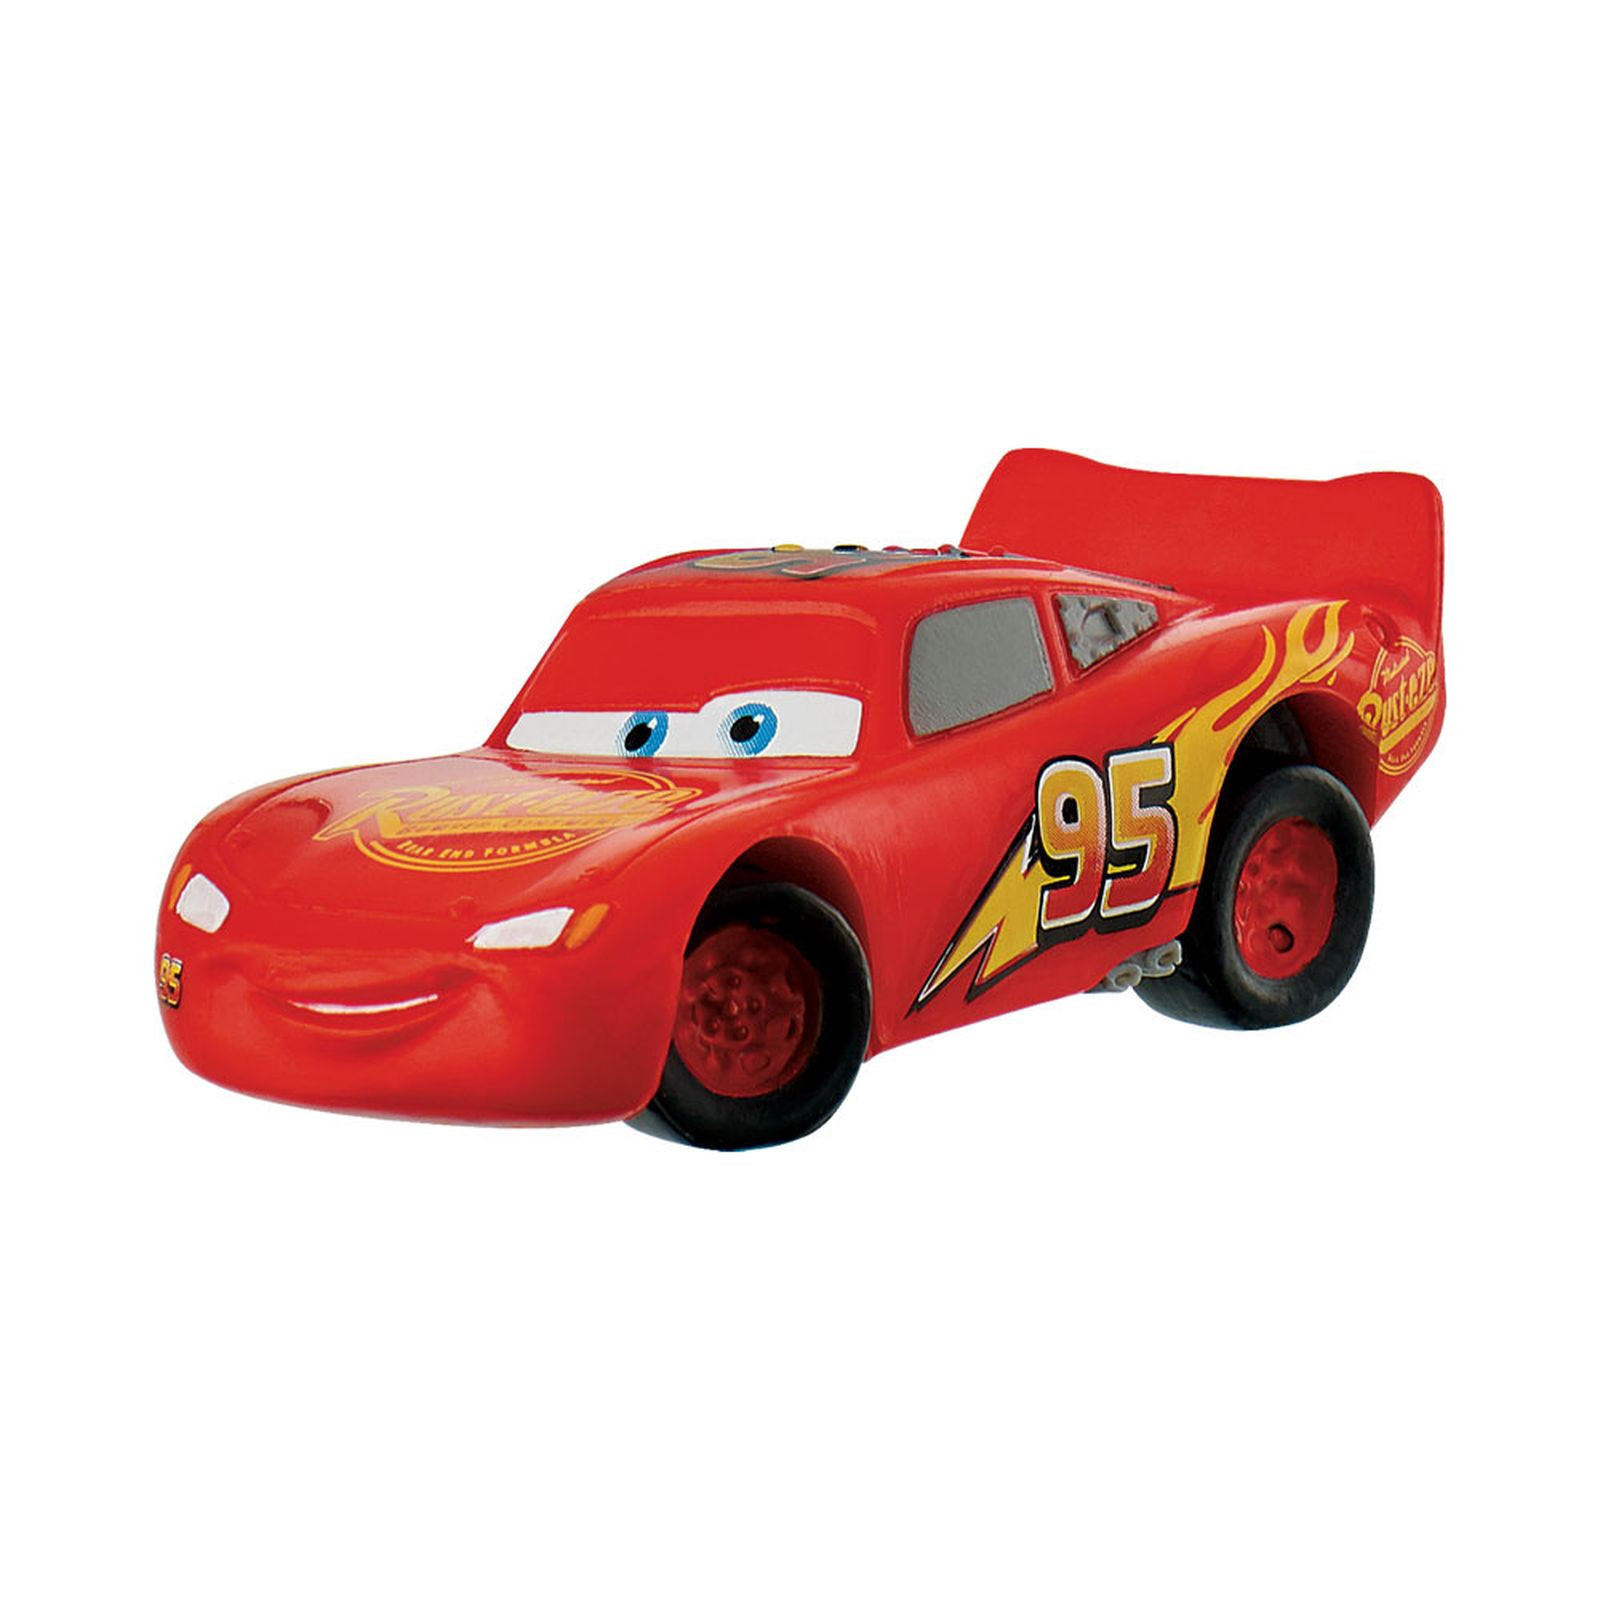 Dans Cars 3, Flash McQueen fait face à une nouvelle génération de bolides